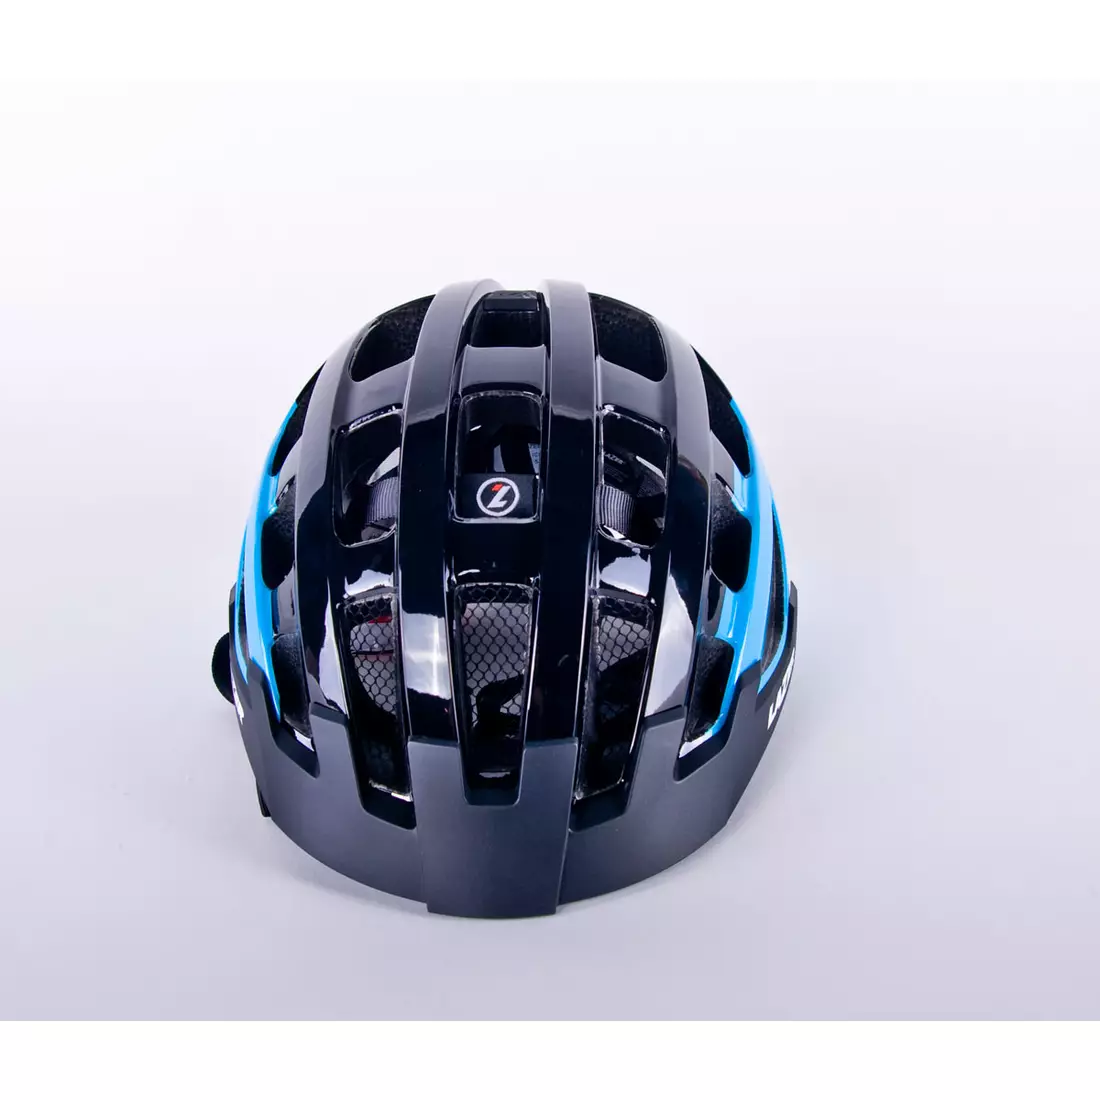 Casca de bicicleta LAZER Compact DLX LED plasa de insecte albastru negru lucios